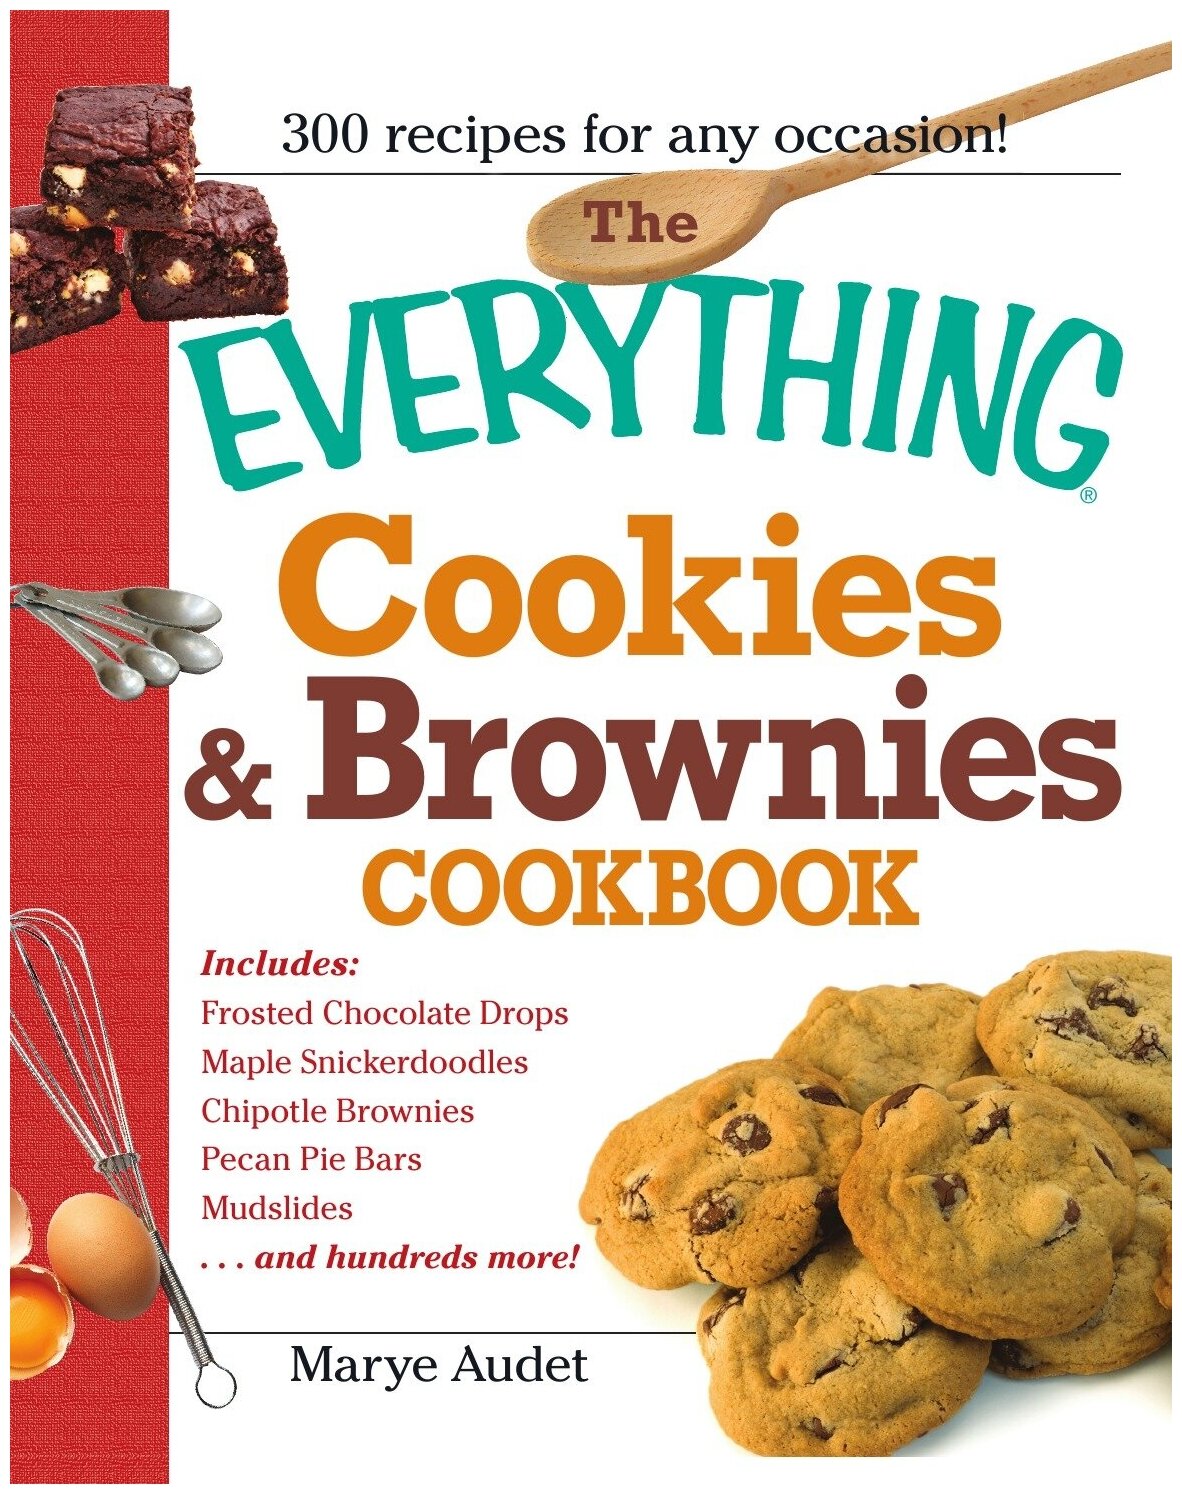 The Everything Cookies & Brownies Cookbook